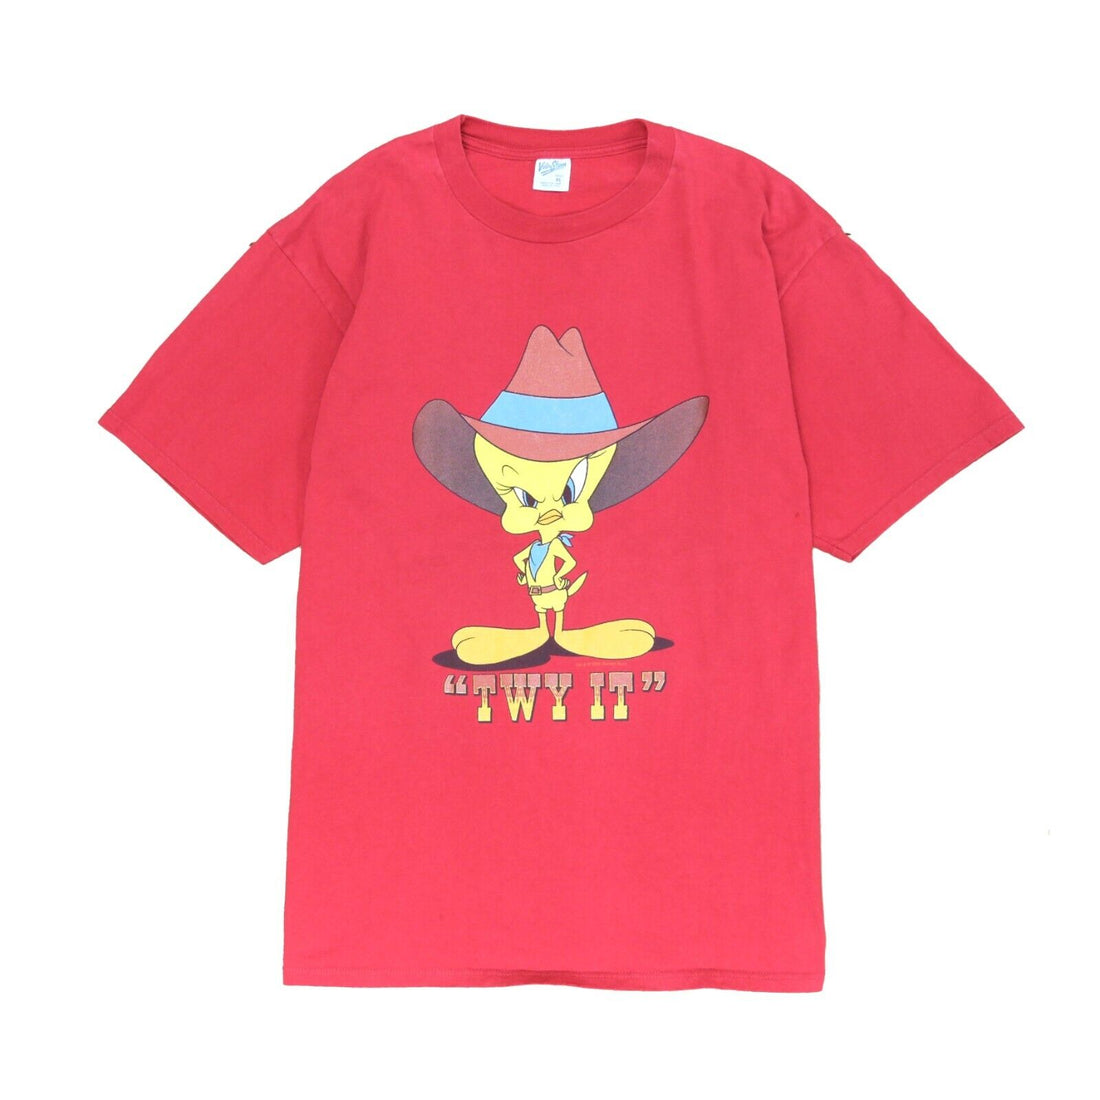 Vintage Tweety Bird Cowboy T-Shirt Size XL Red Looney Tunes 1993 90s